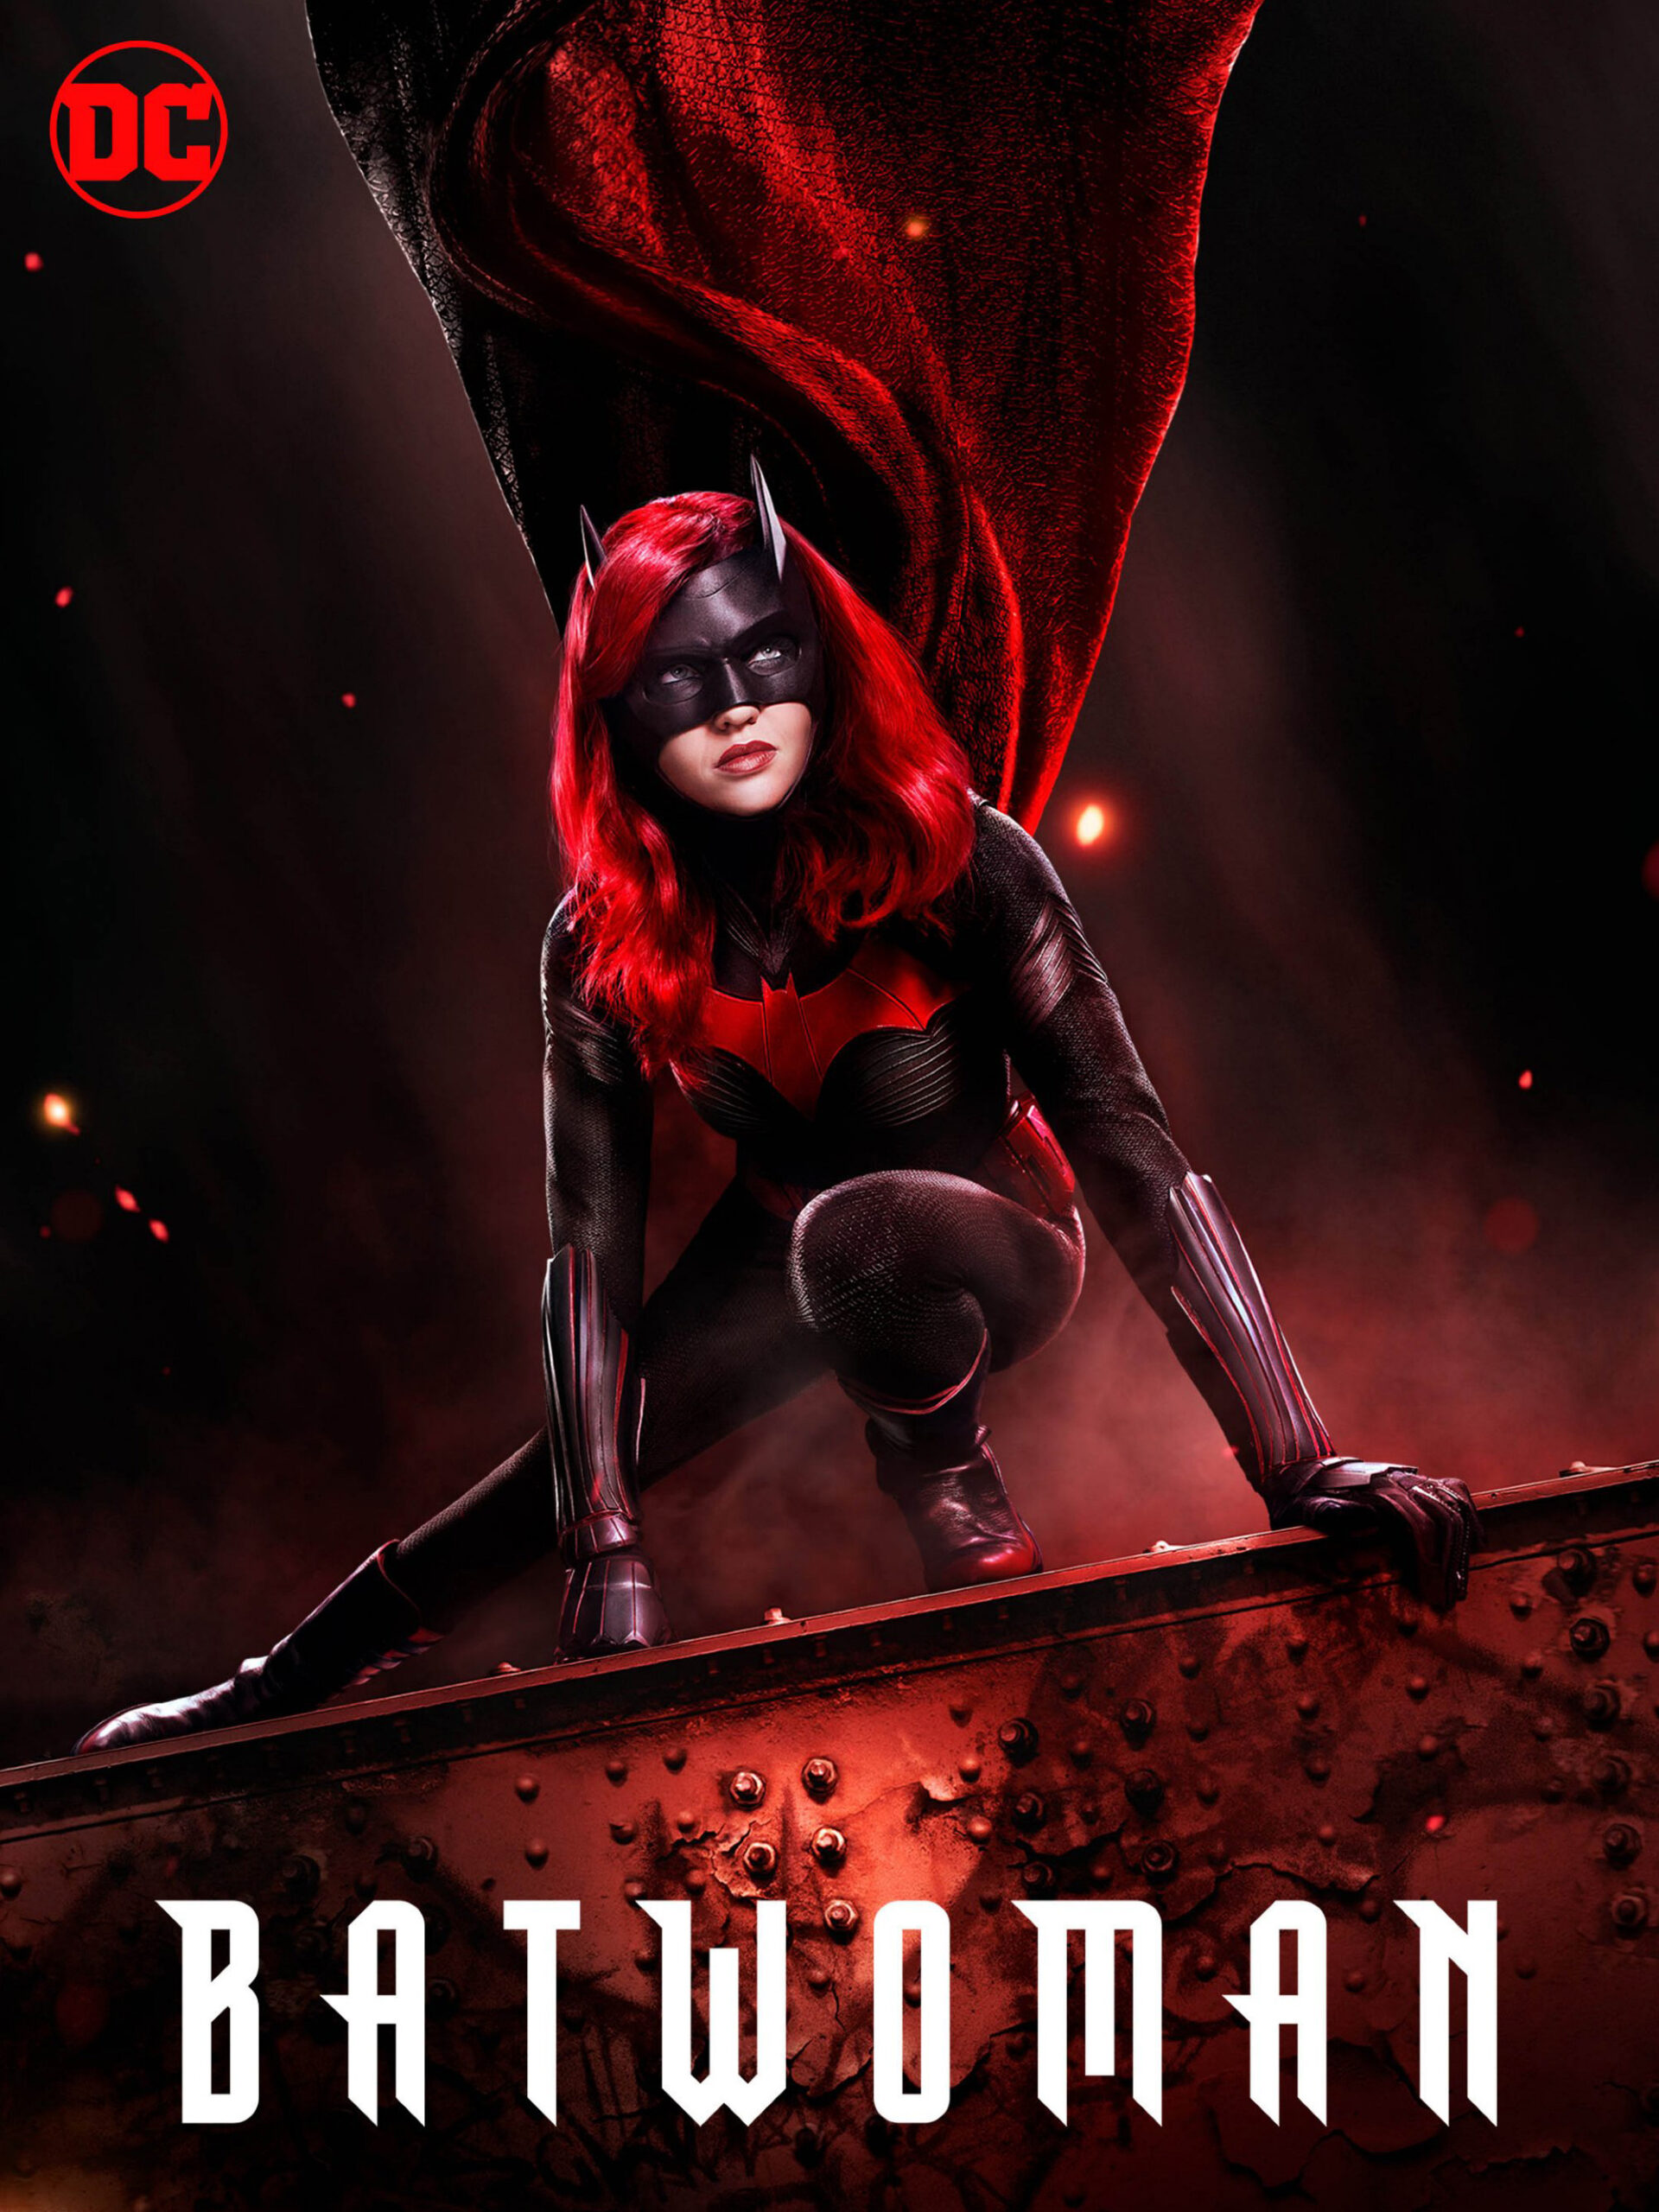 ดูหนังออนไลน์ Batwoman Season 1 (2019) EP.4 แบทวูแมน ซีซั่น 1 ตอนที่ 4 (Soundtrack)